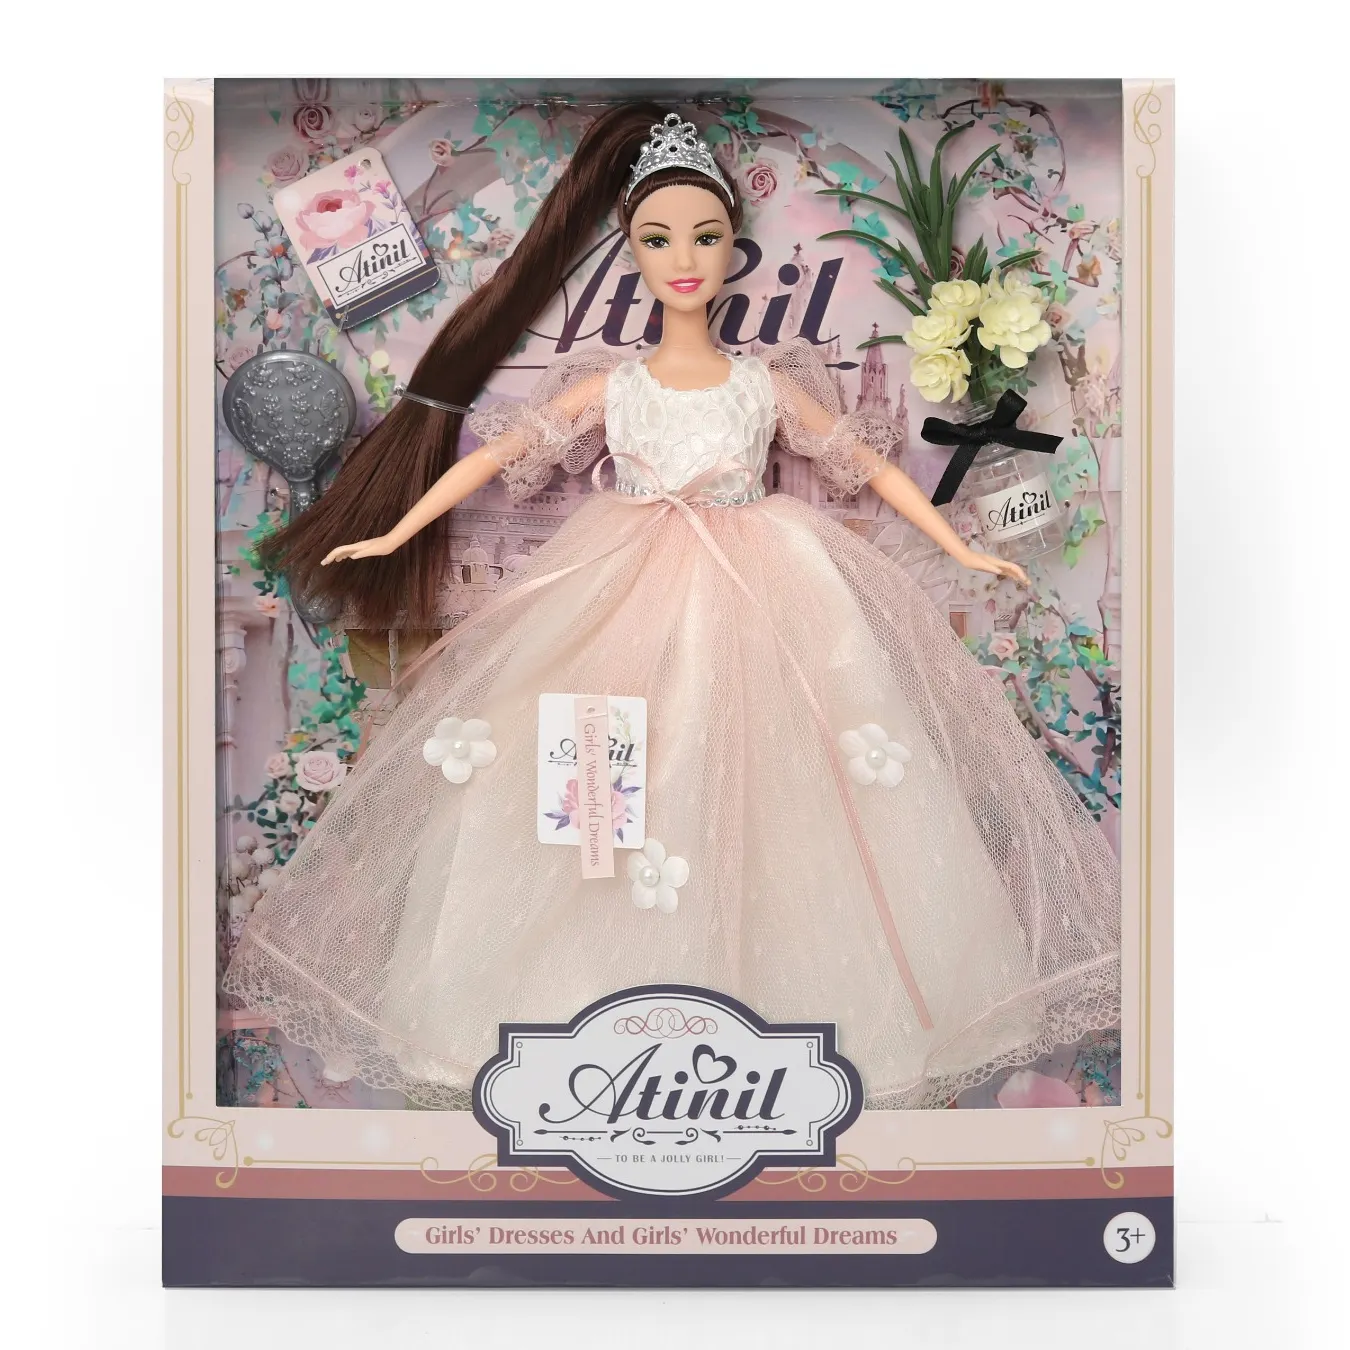 Custom Fashion 11 Inch Pretty Silicone Doll Toys High Quality Vinyl Toys Beautiful Dolls For girls